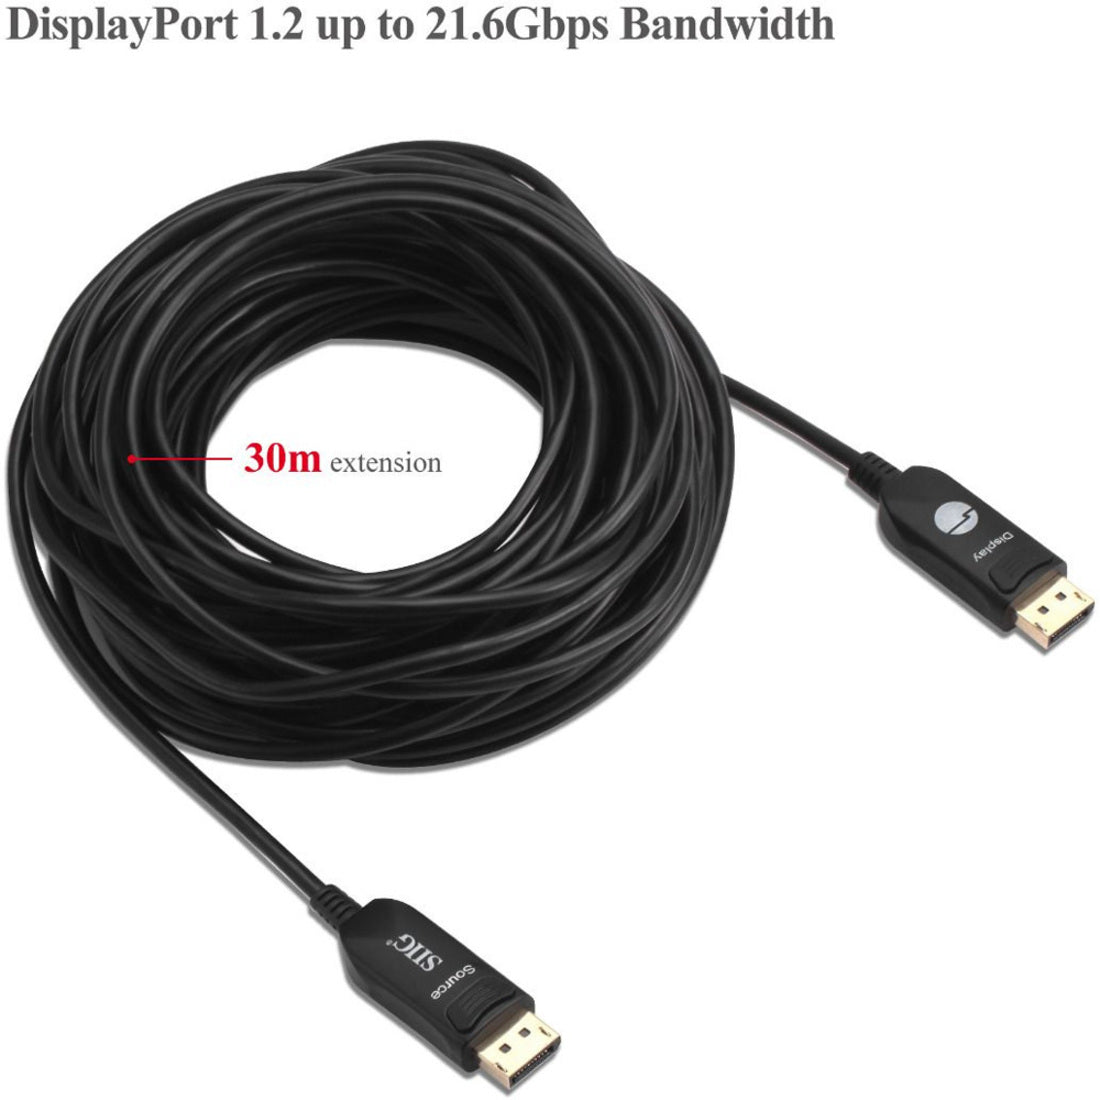 SIIG 4K DisplayPort 1.2 AOC Cable - 30M